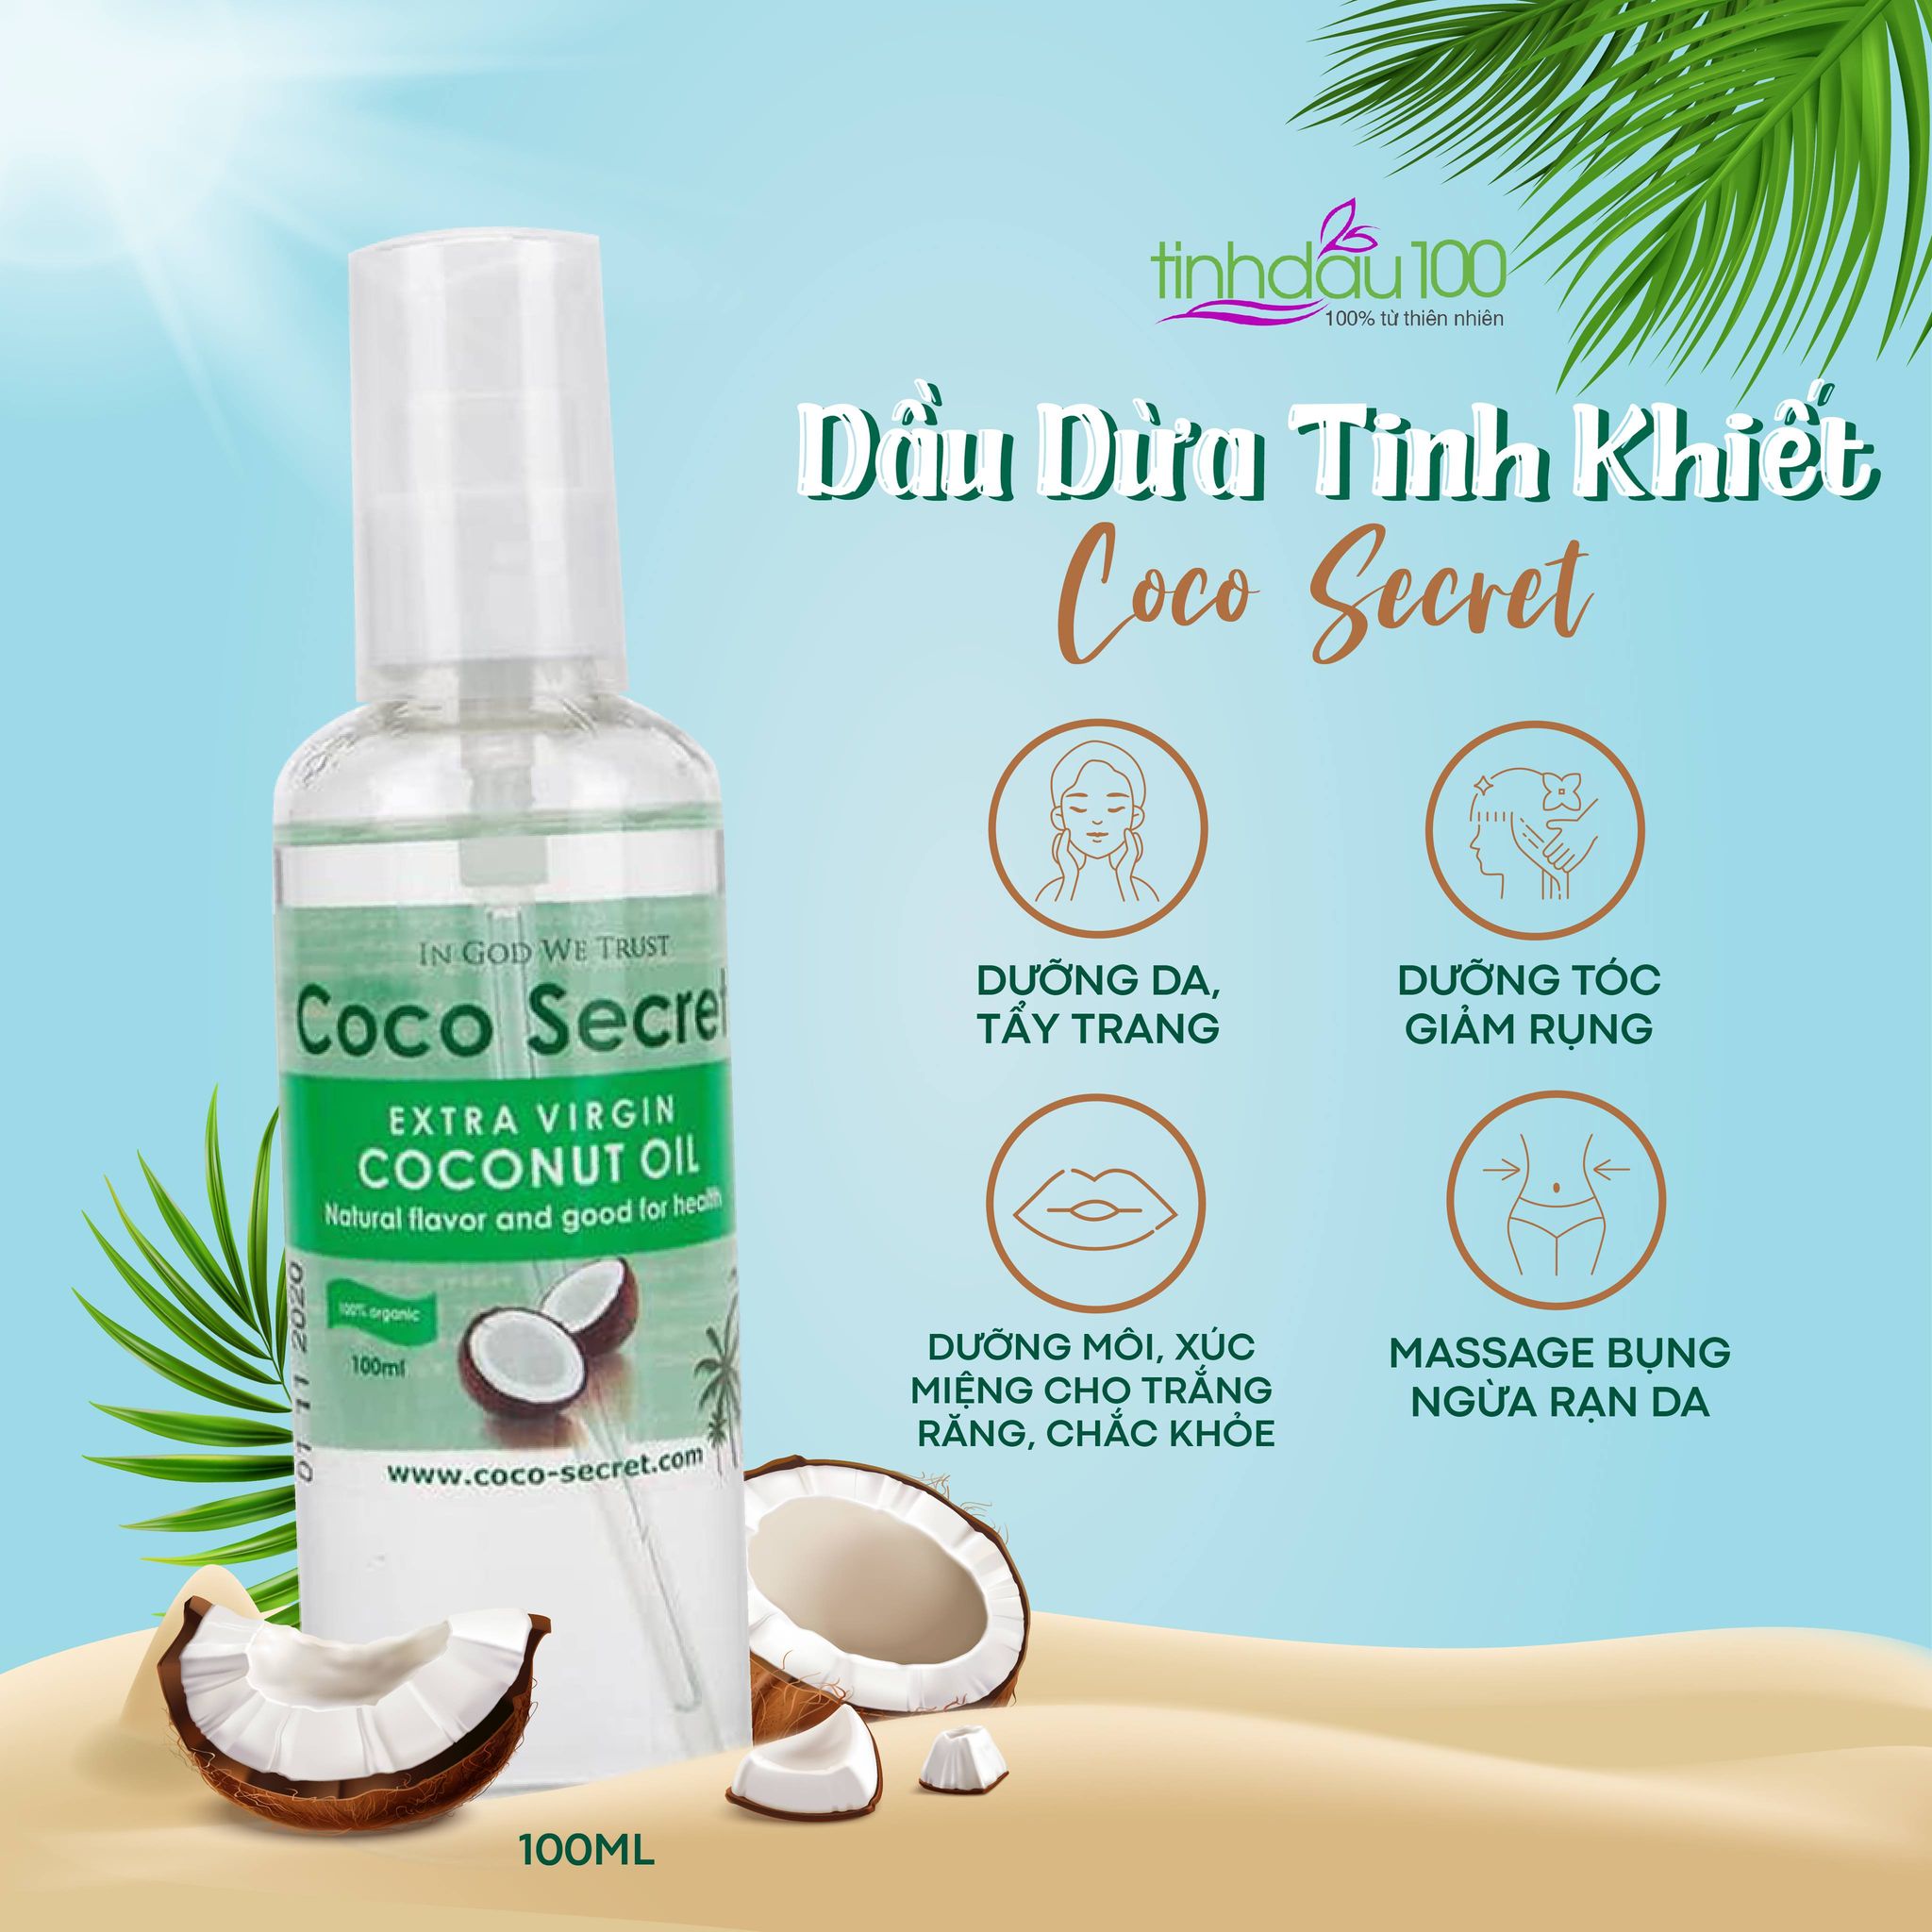 Mua Dầu dừa ép lạnh tinh khiết Coco-Secret 500 ml tại Coco-Secret Sản phẩm  từ thiên nhiên